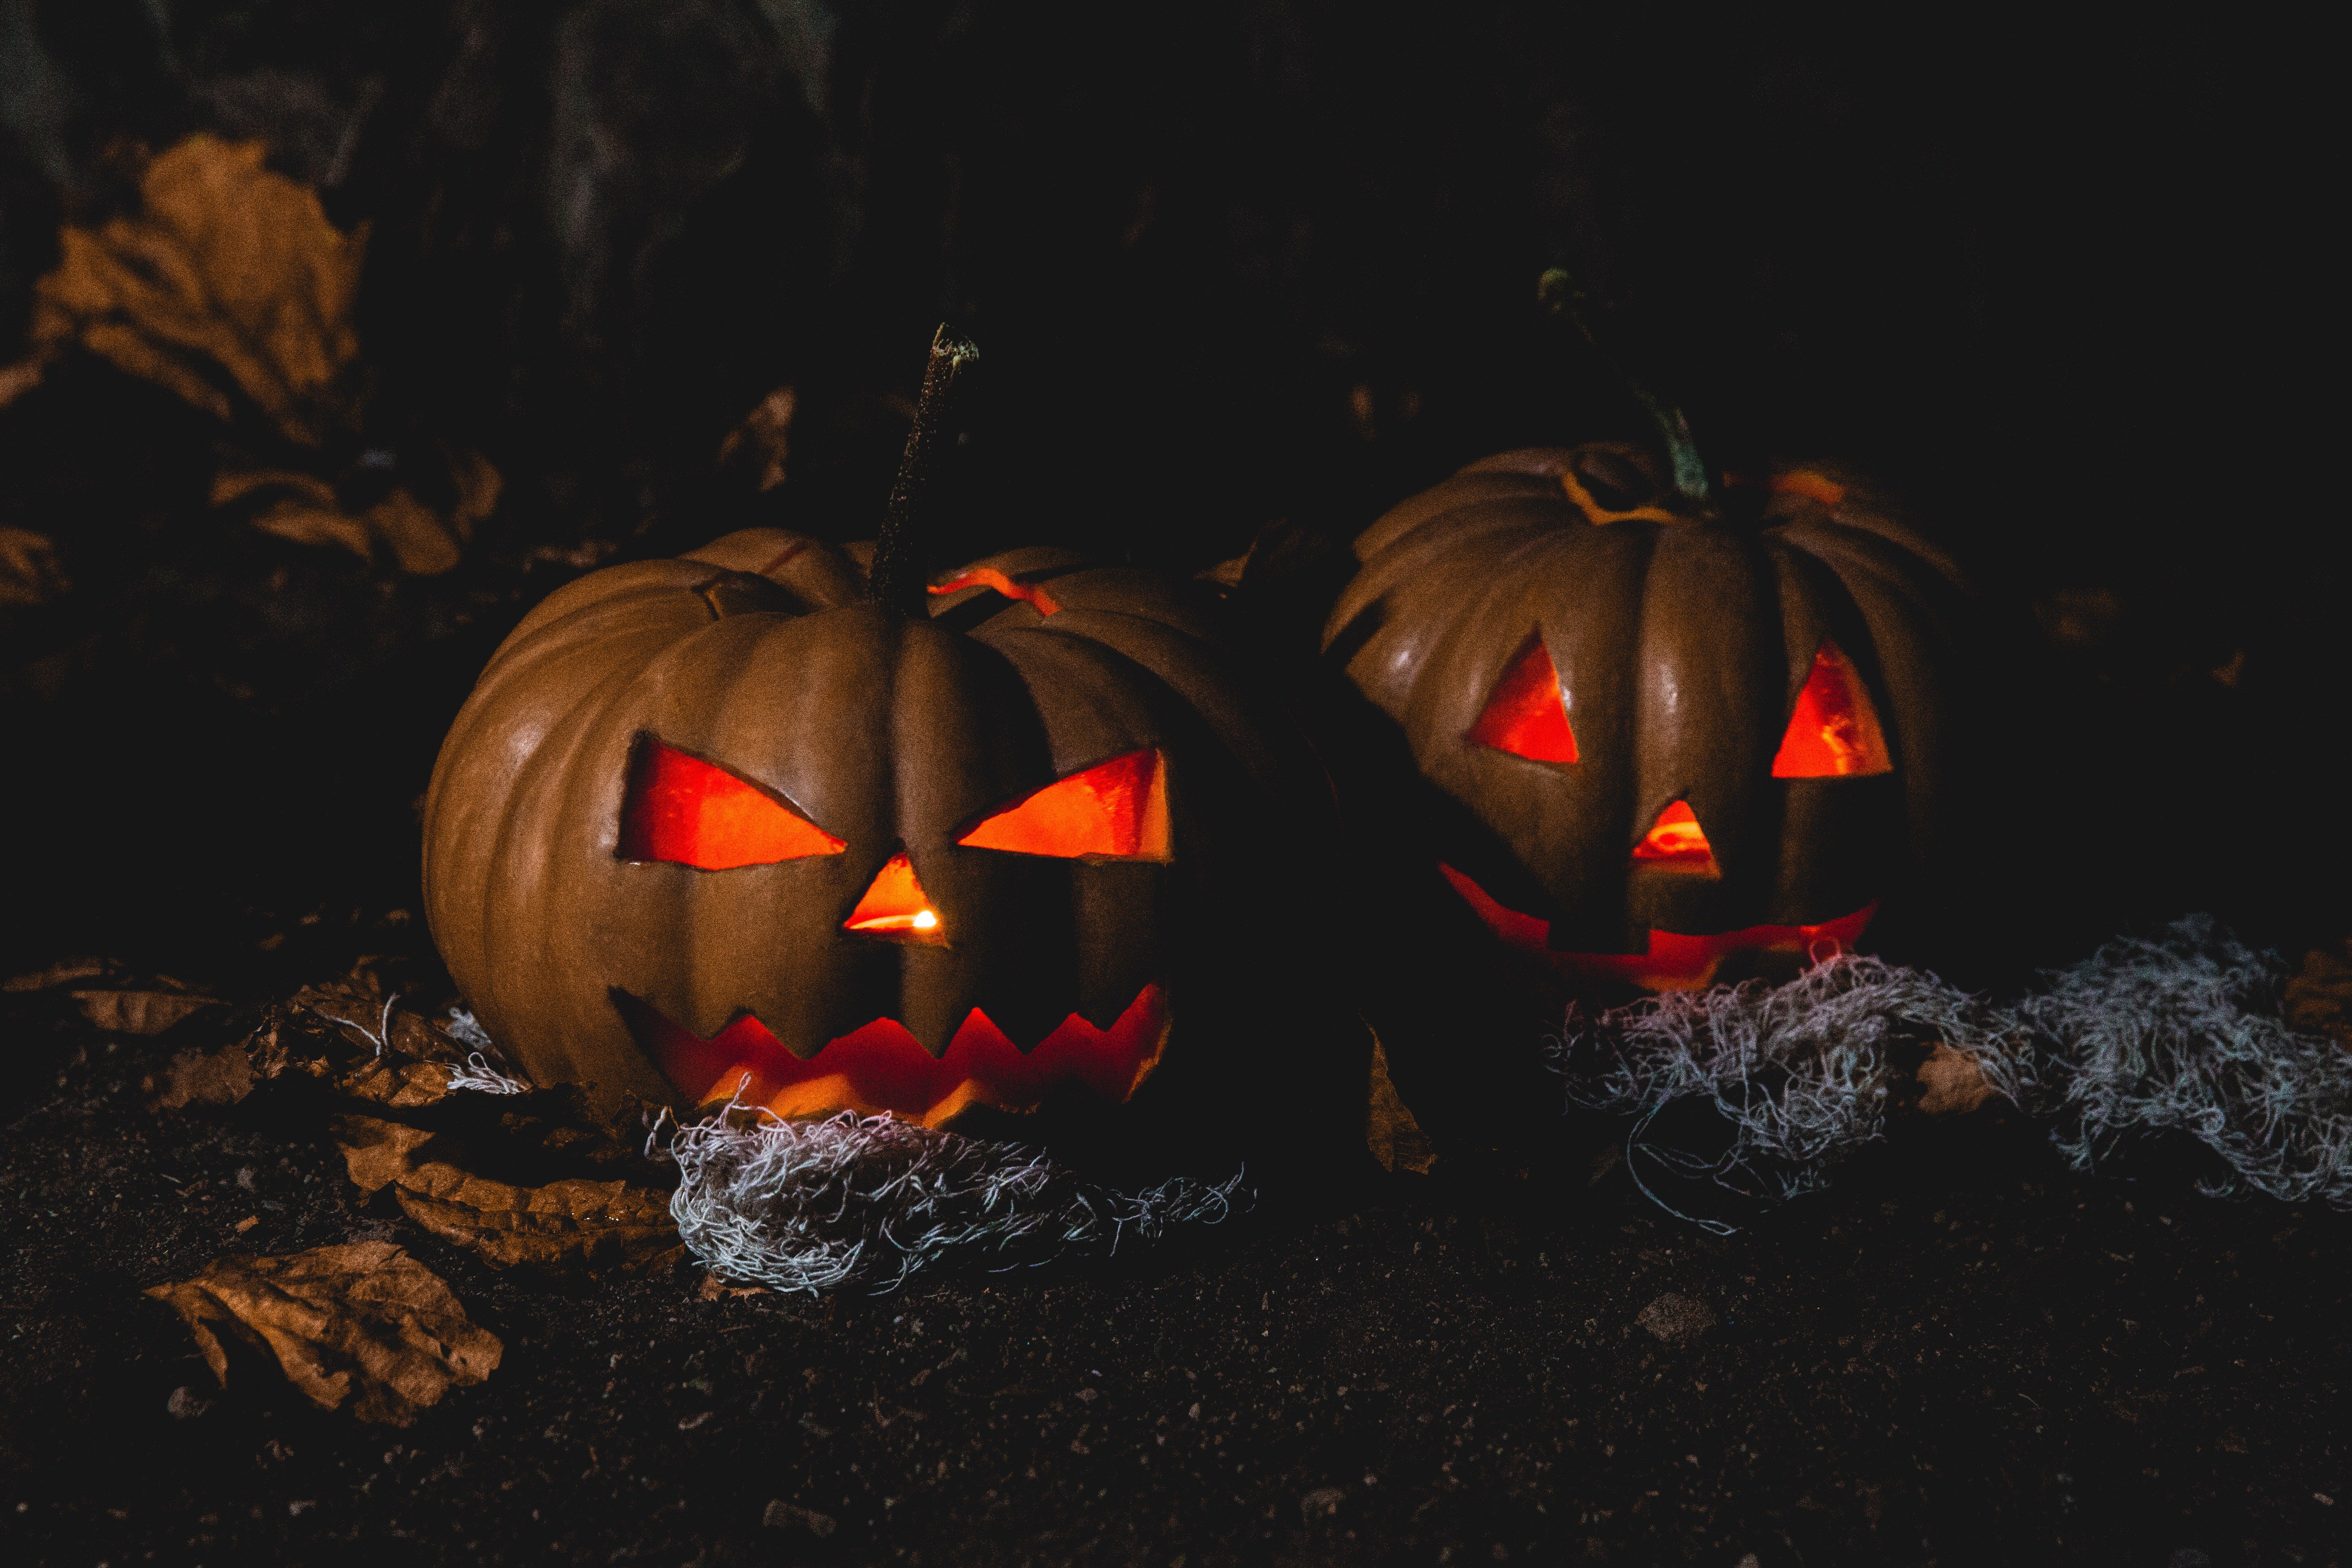 Glowing carved pumpkins in the dark